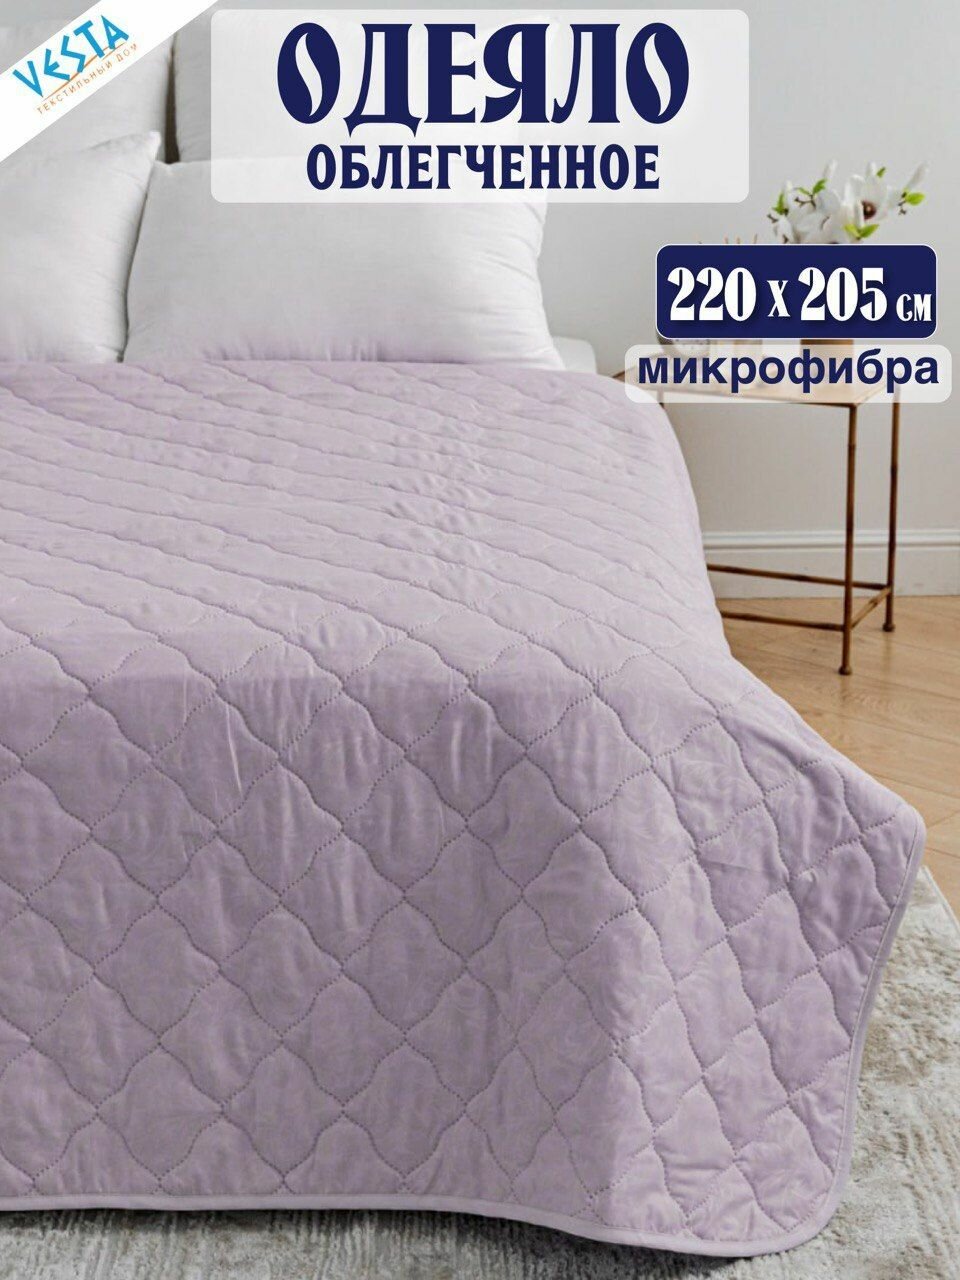 Одеяло летнее лавандовое Vesta евро размер, дешевое тонкое, материал микрофибра, покрывало легкое 200х205 см